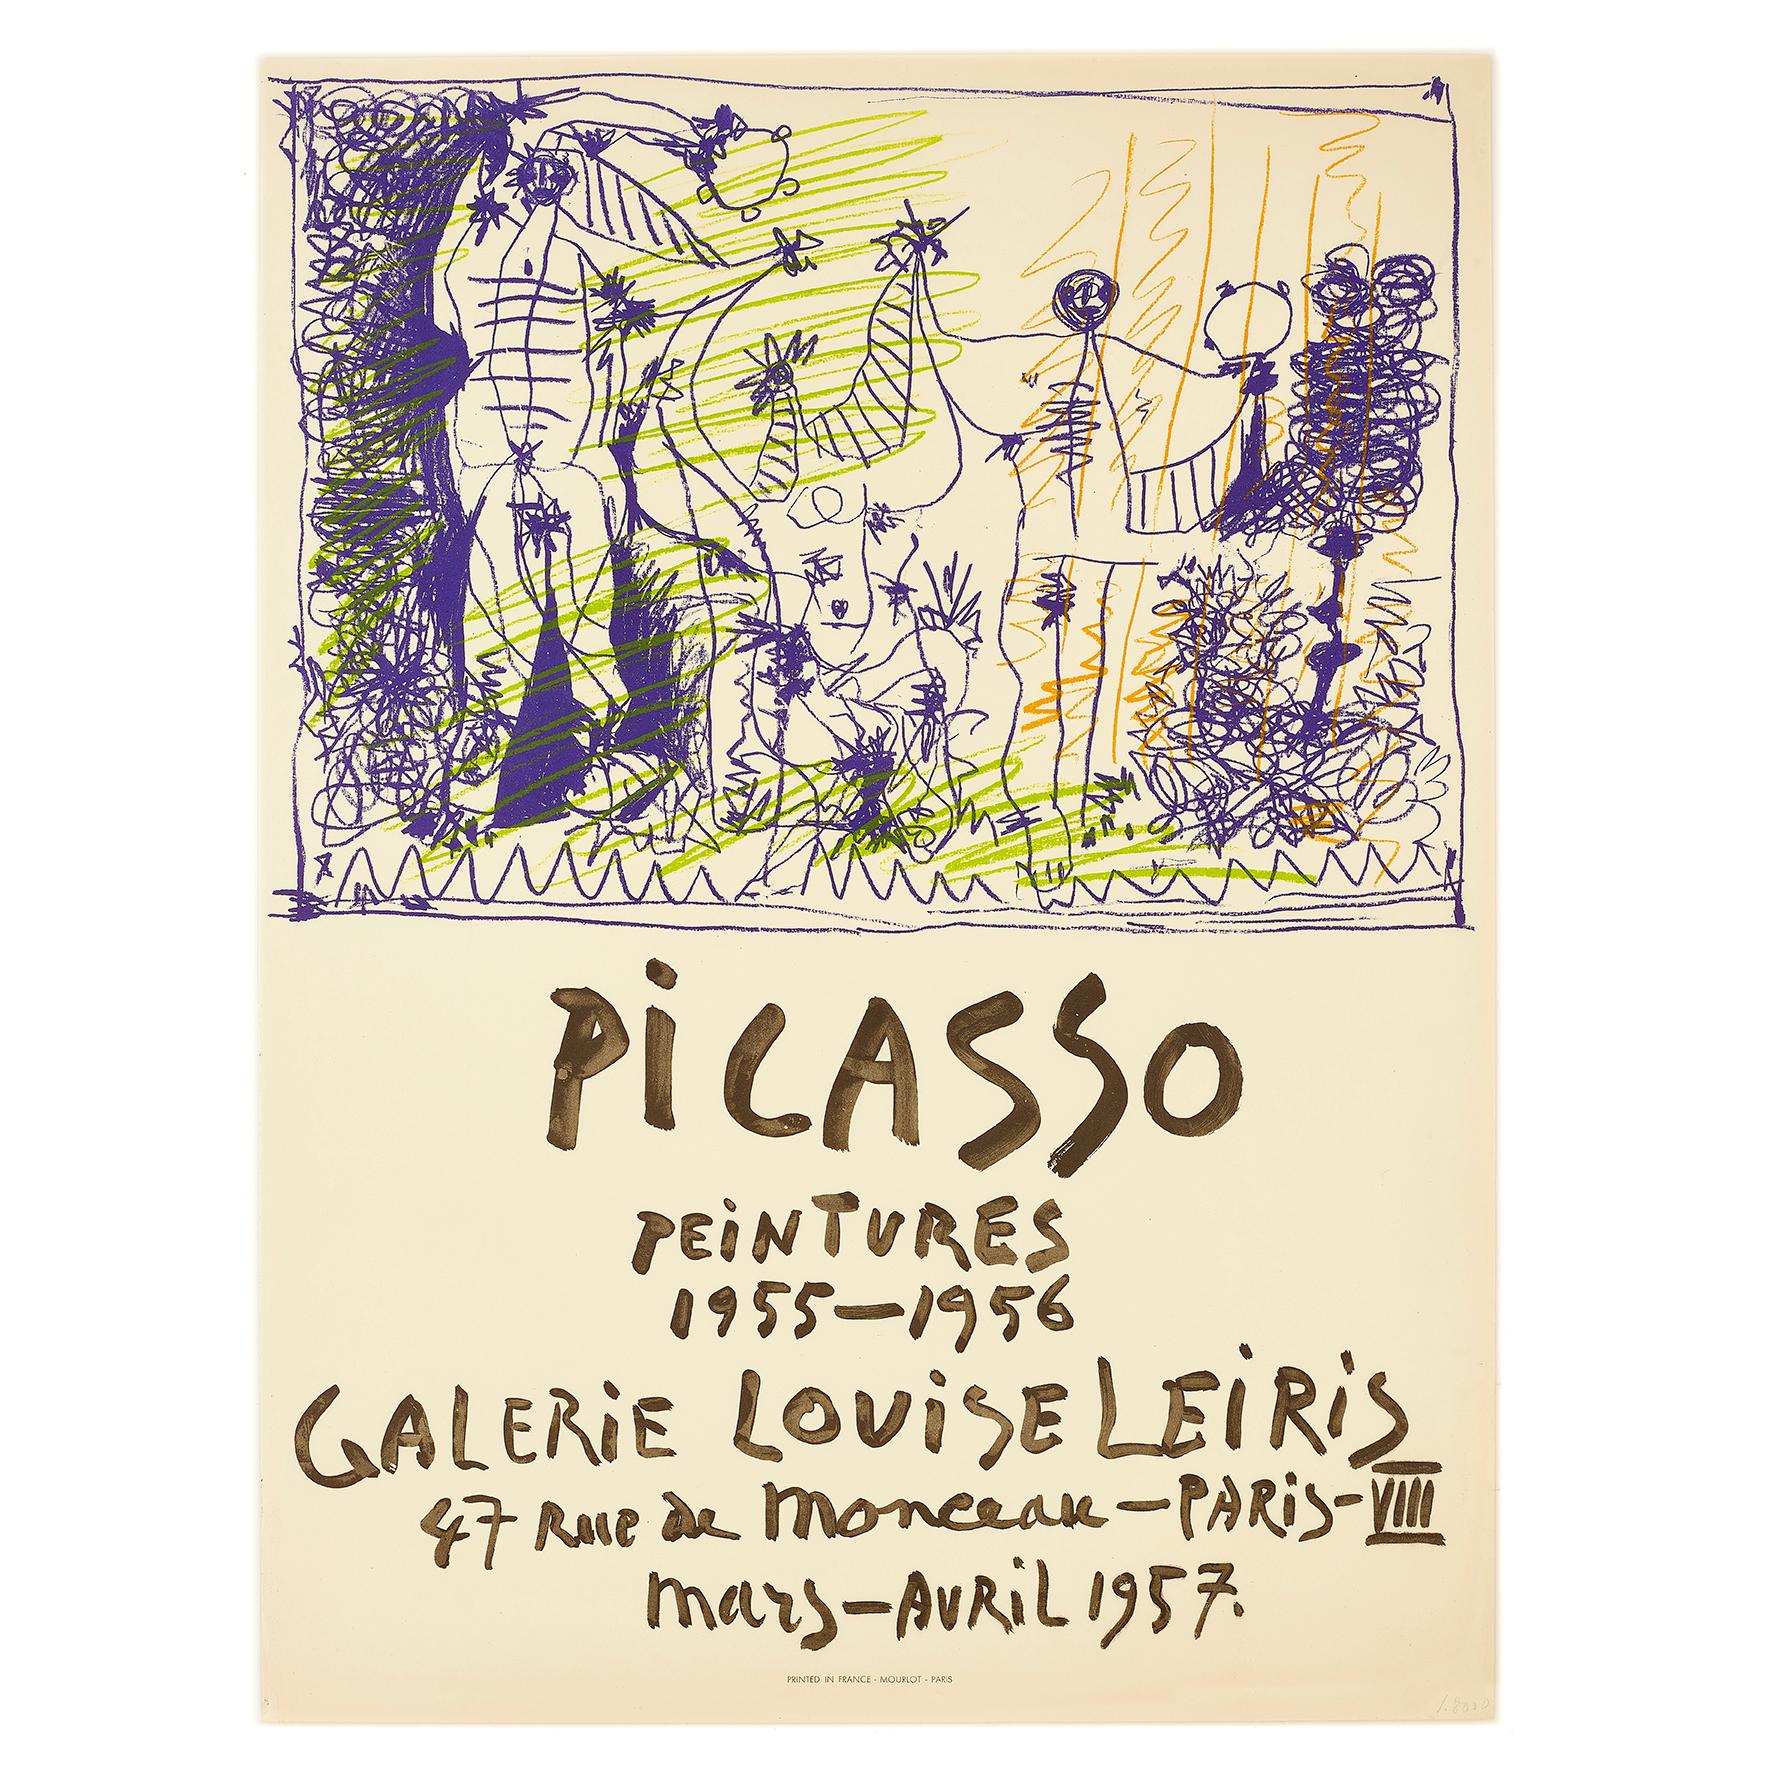 Original poster: Picasso Peintures 1955-1956, Galerie Louise Leiris, Paris